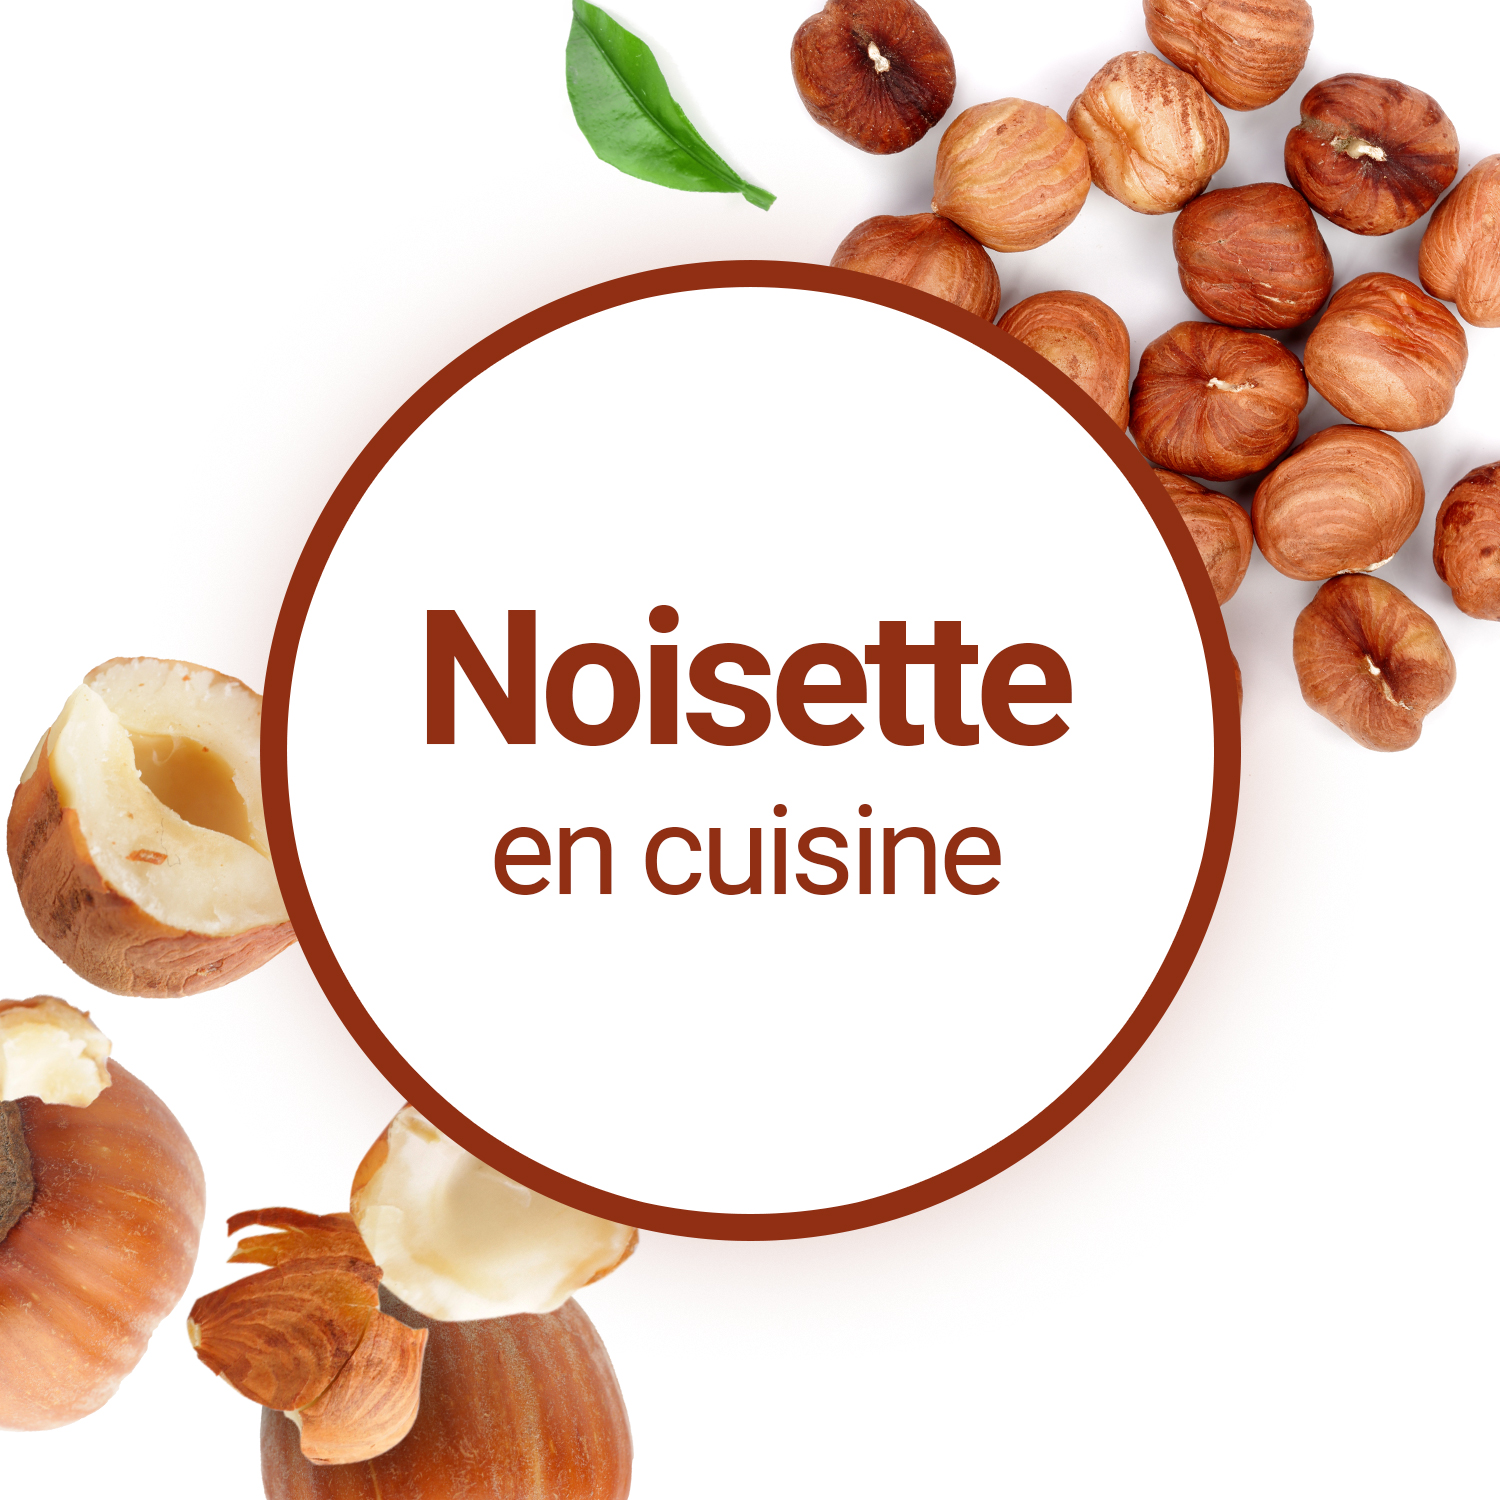 Noisette : apports nutritionnels, bienfaits, composition